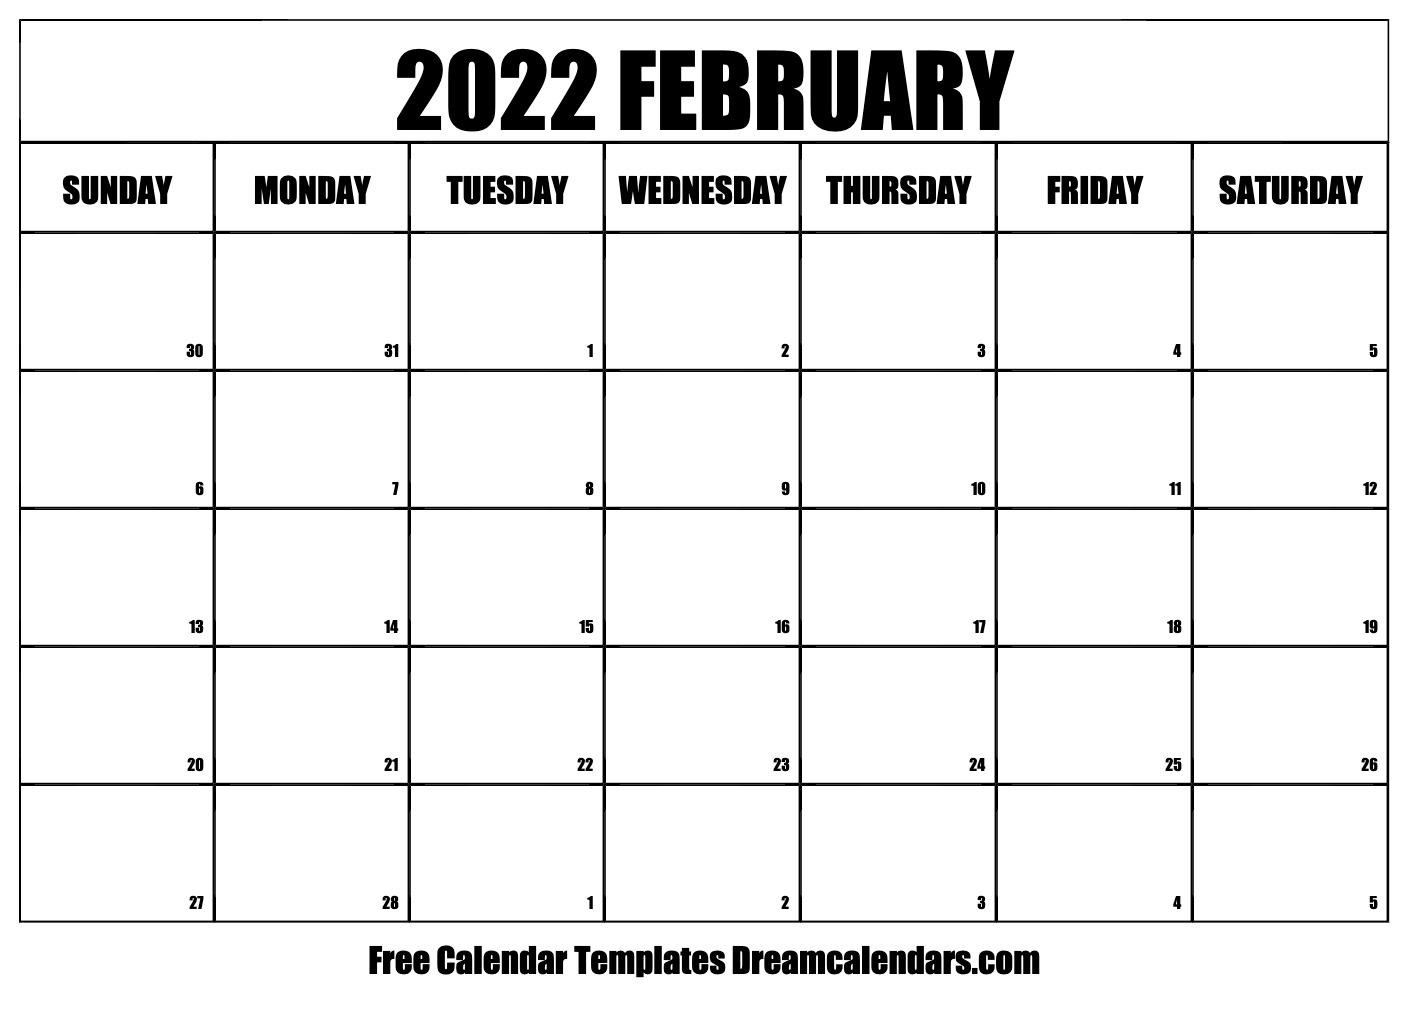 Get Lunar Calendar February 2022